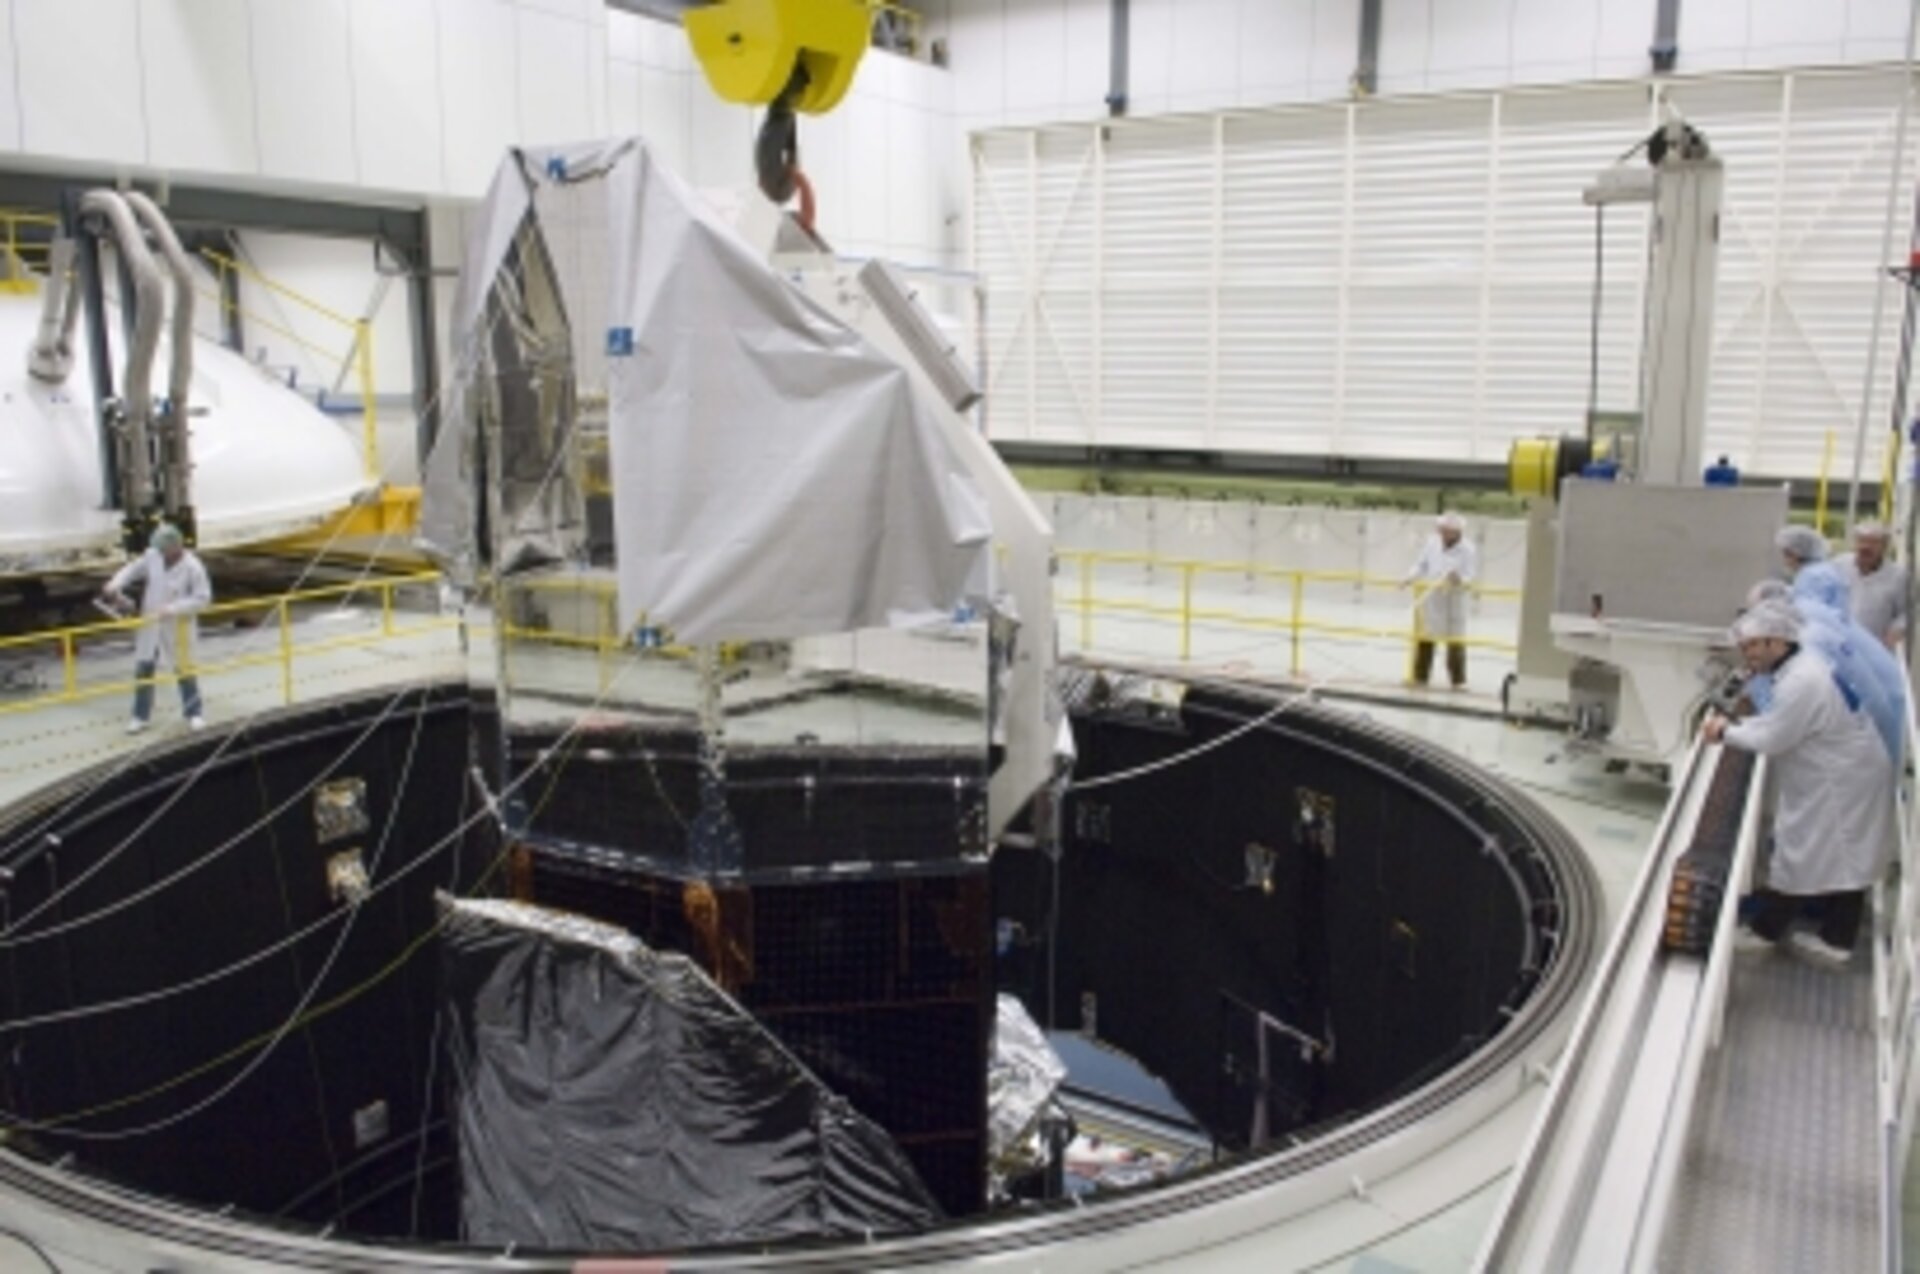 Herschel beim Test im großen Weltraumsimulator